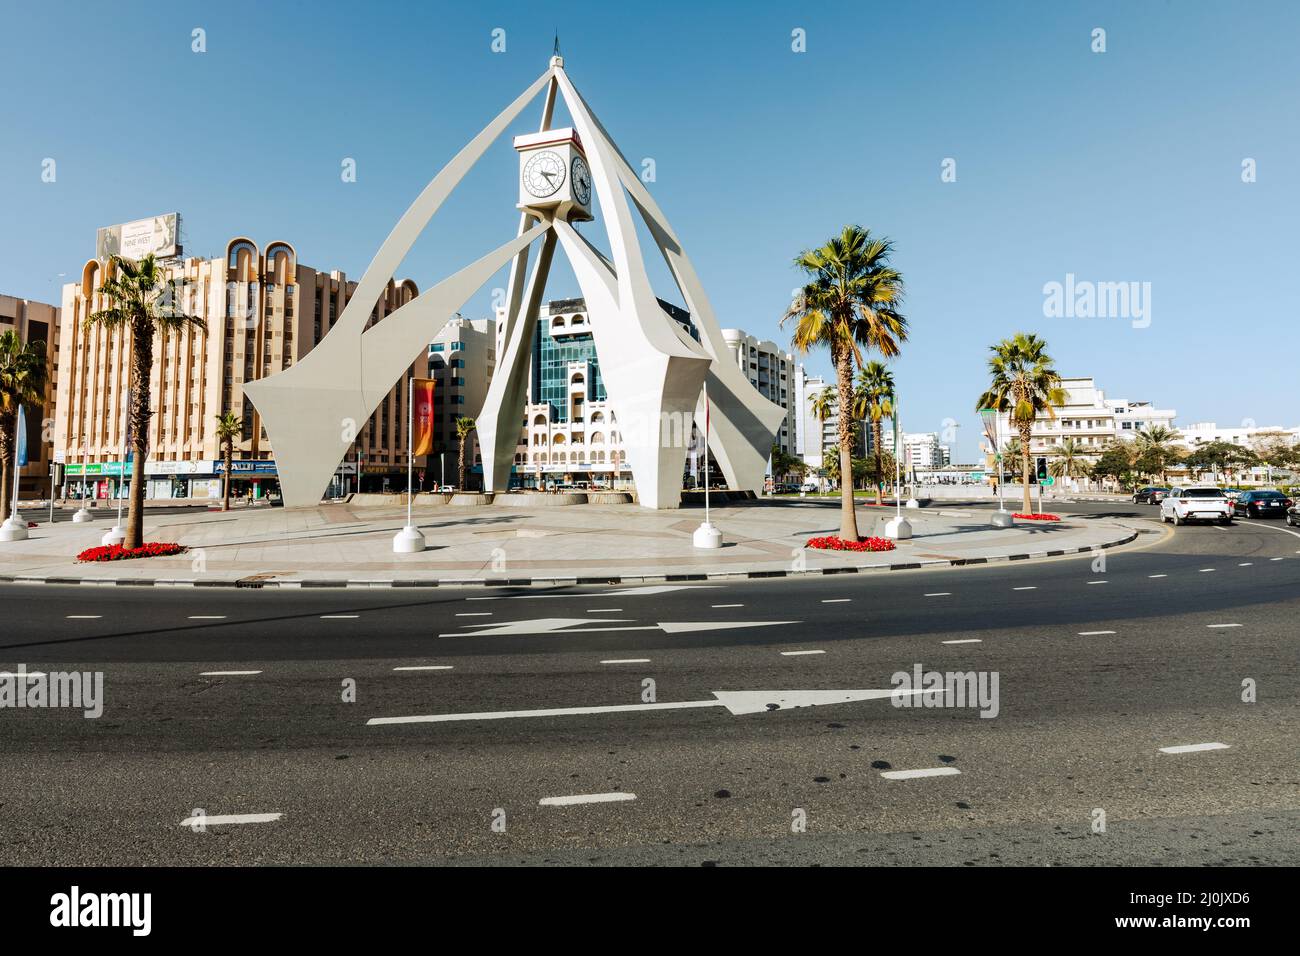 Deira horloge tour rond-point, un vieux point de repère de Dubaï construit en 1965. Émirats arabes Unis. Moyen-Orient. Banque D'Images